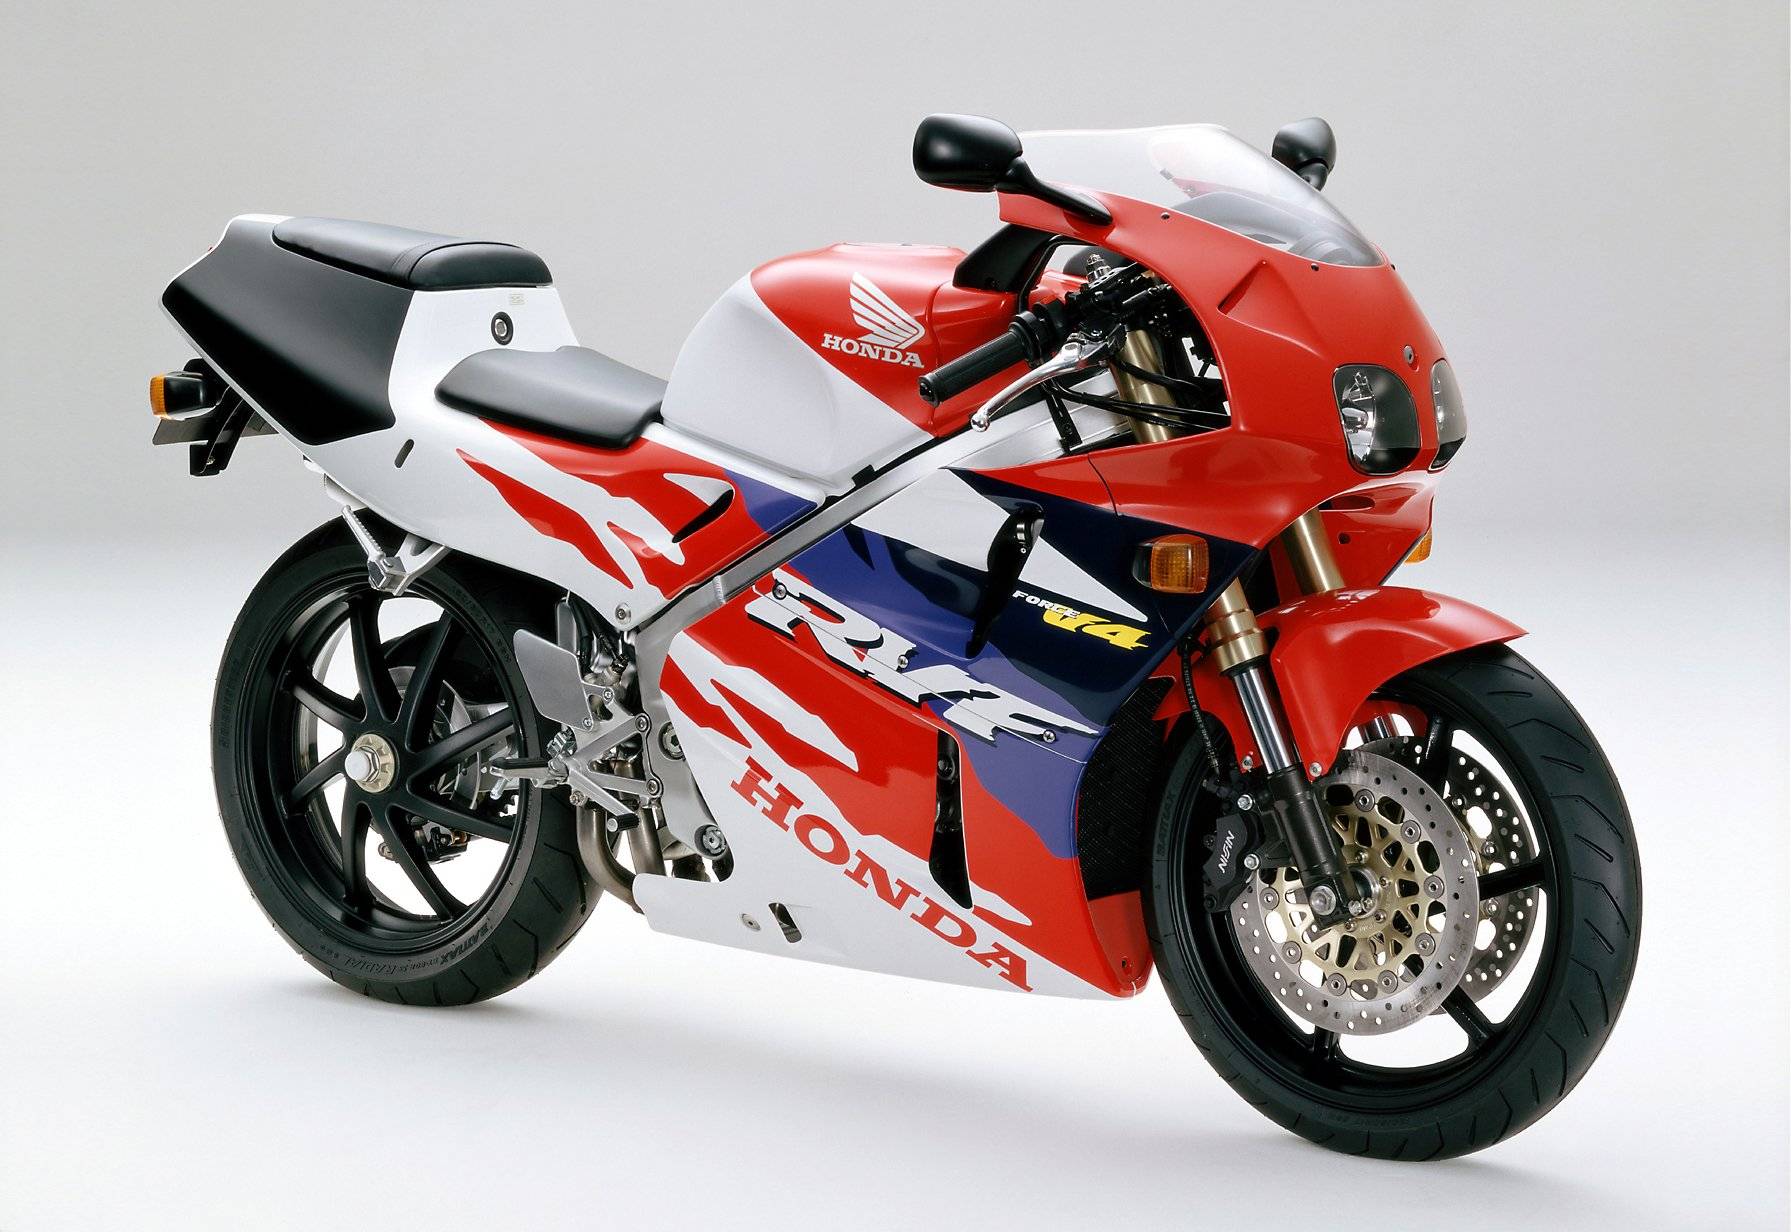 Мотоцикл vfr 400 (rvf 400) - прекрасный образец спортивного байка прошлой эпохи | ⚡chtocar